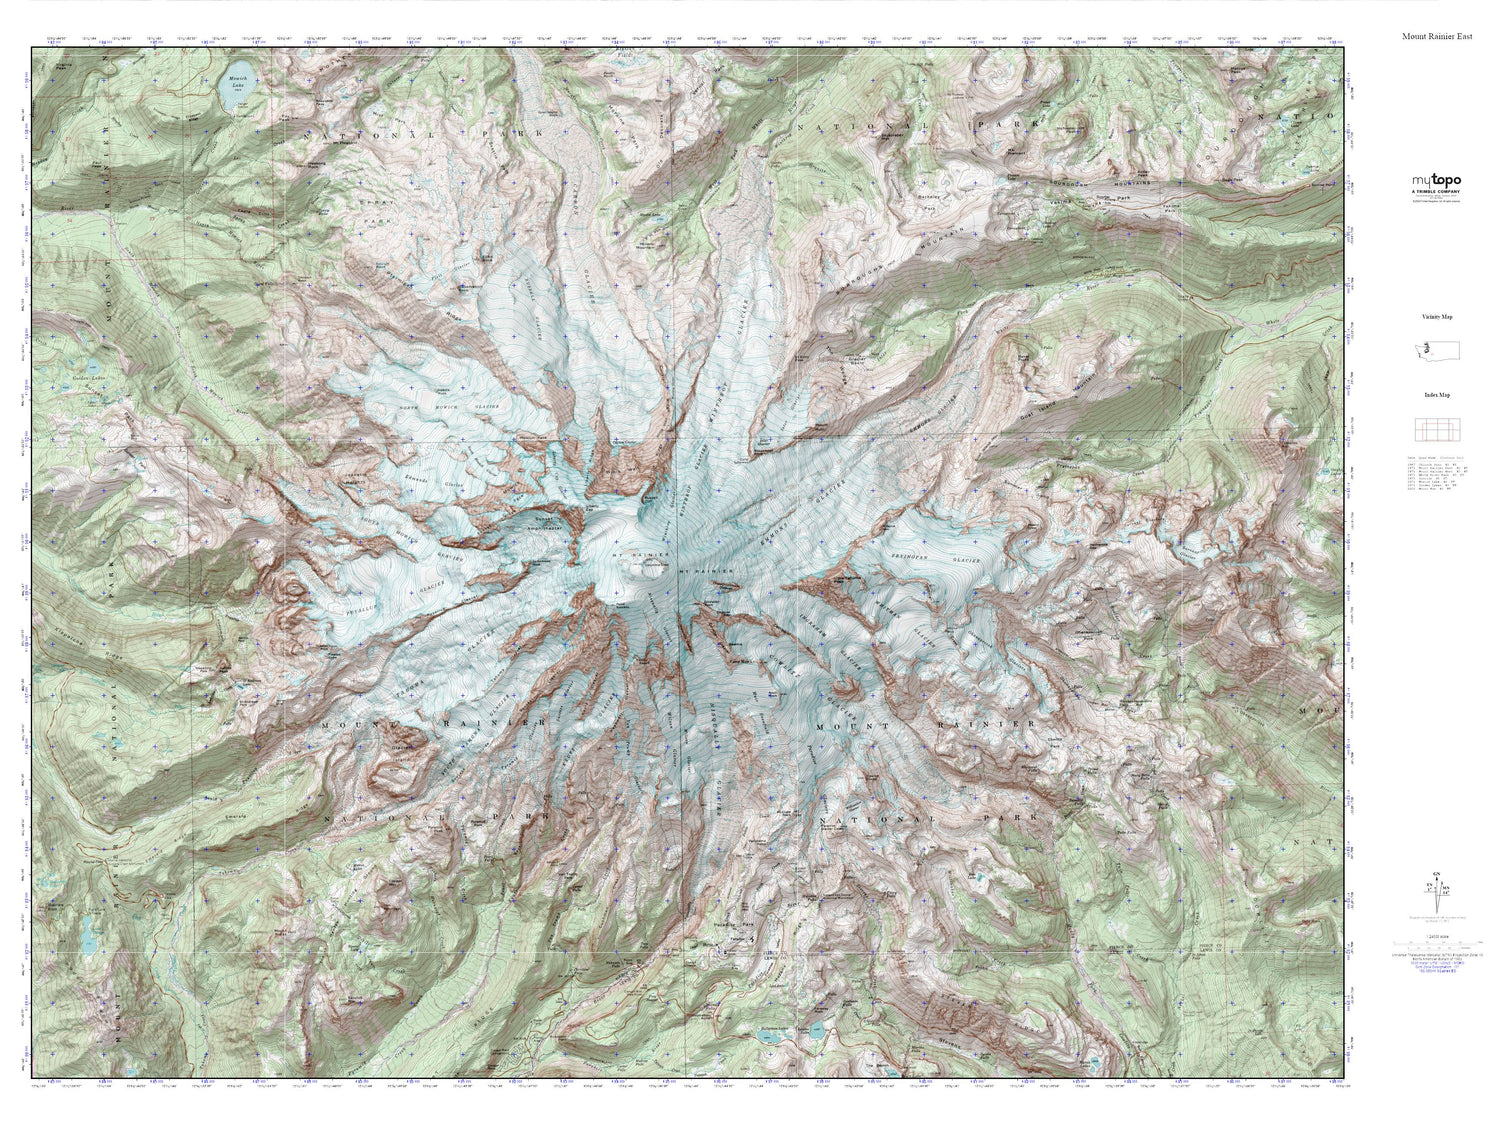 Mount Rainier East MyTopo Explorer Series Map Image